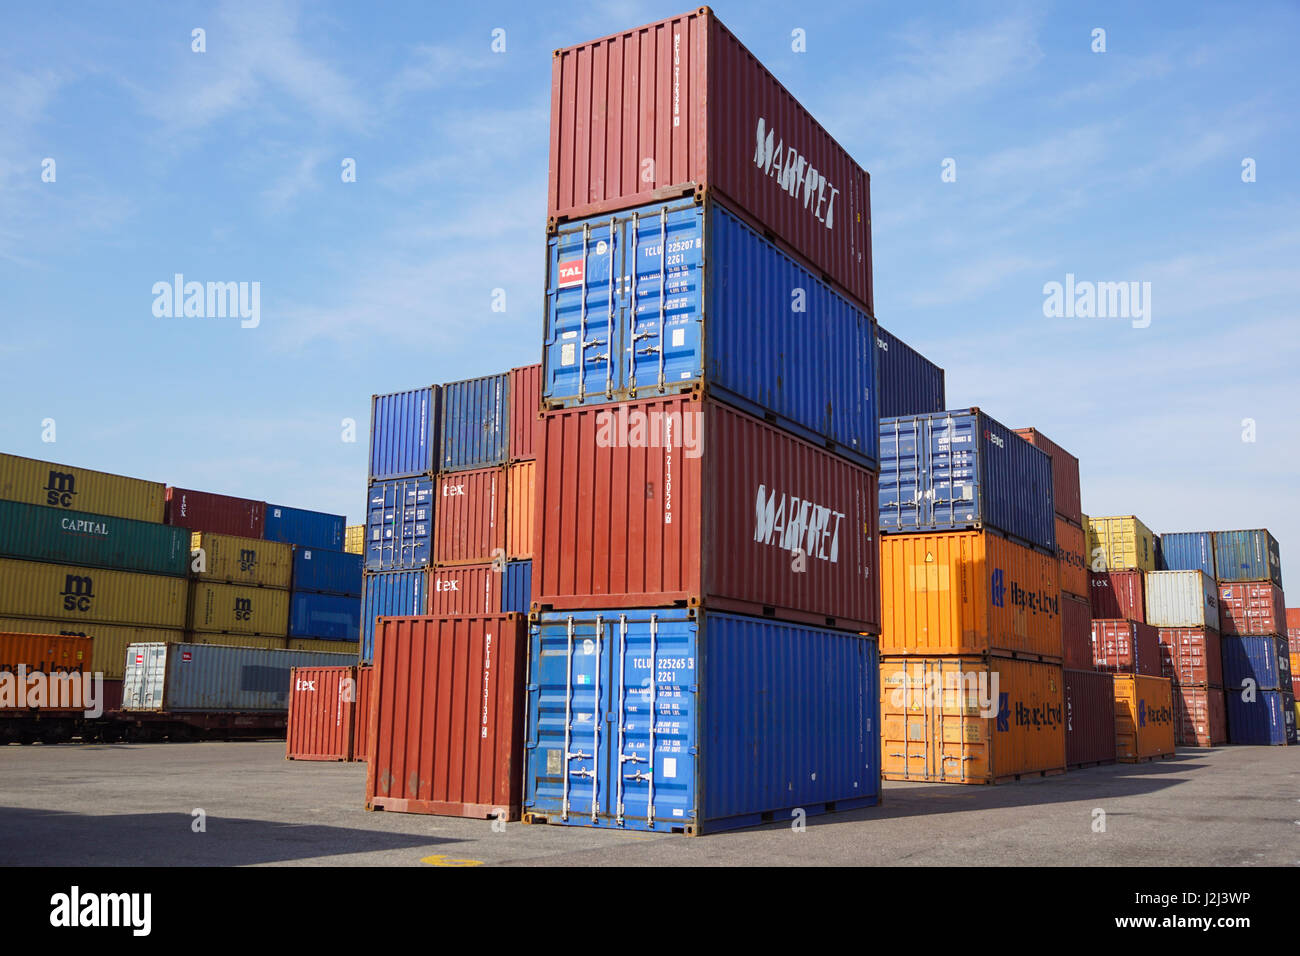 Mailand, Italien 10. April 2017: mehrere Container sind bereit, auf Schiffe im Hafen geladen werden. Container sind die klassische Methode für den Seeverkehr von verschiedenen Gütern Stockfoto